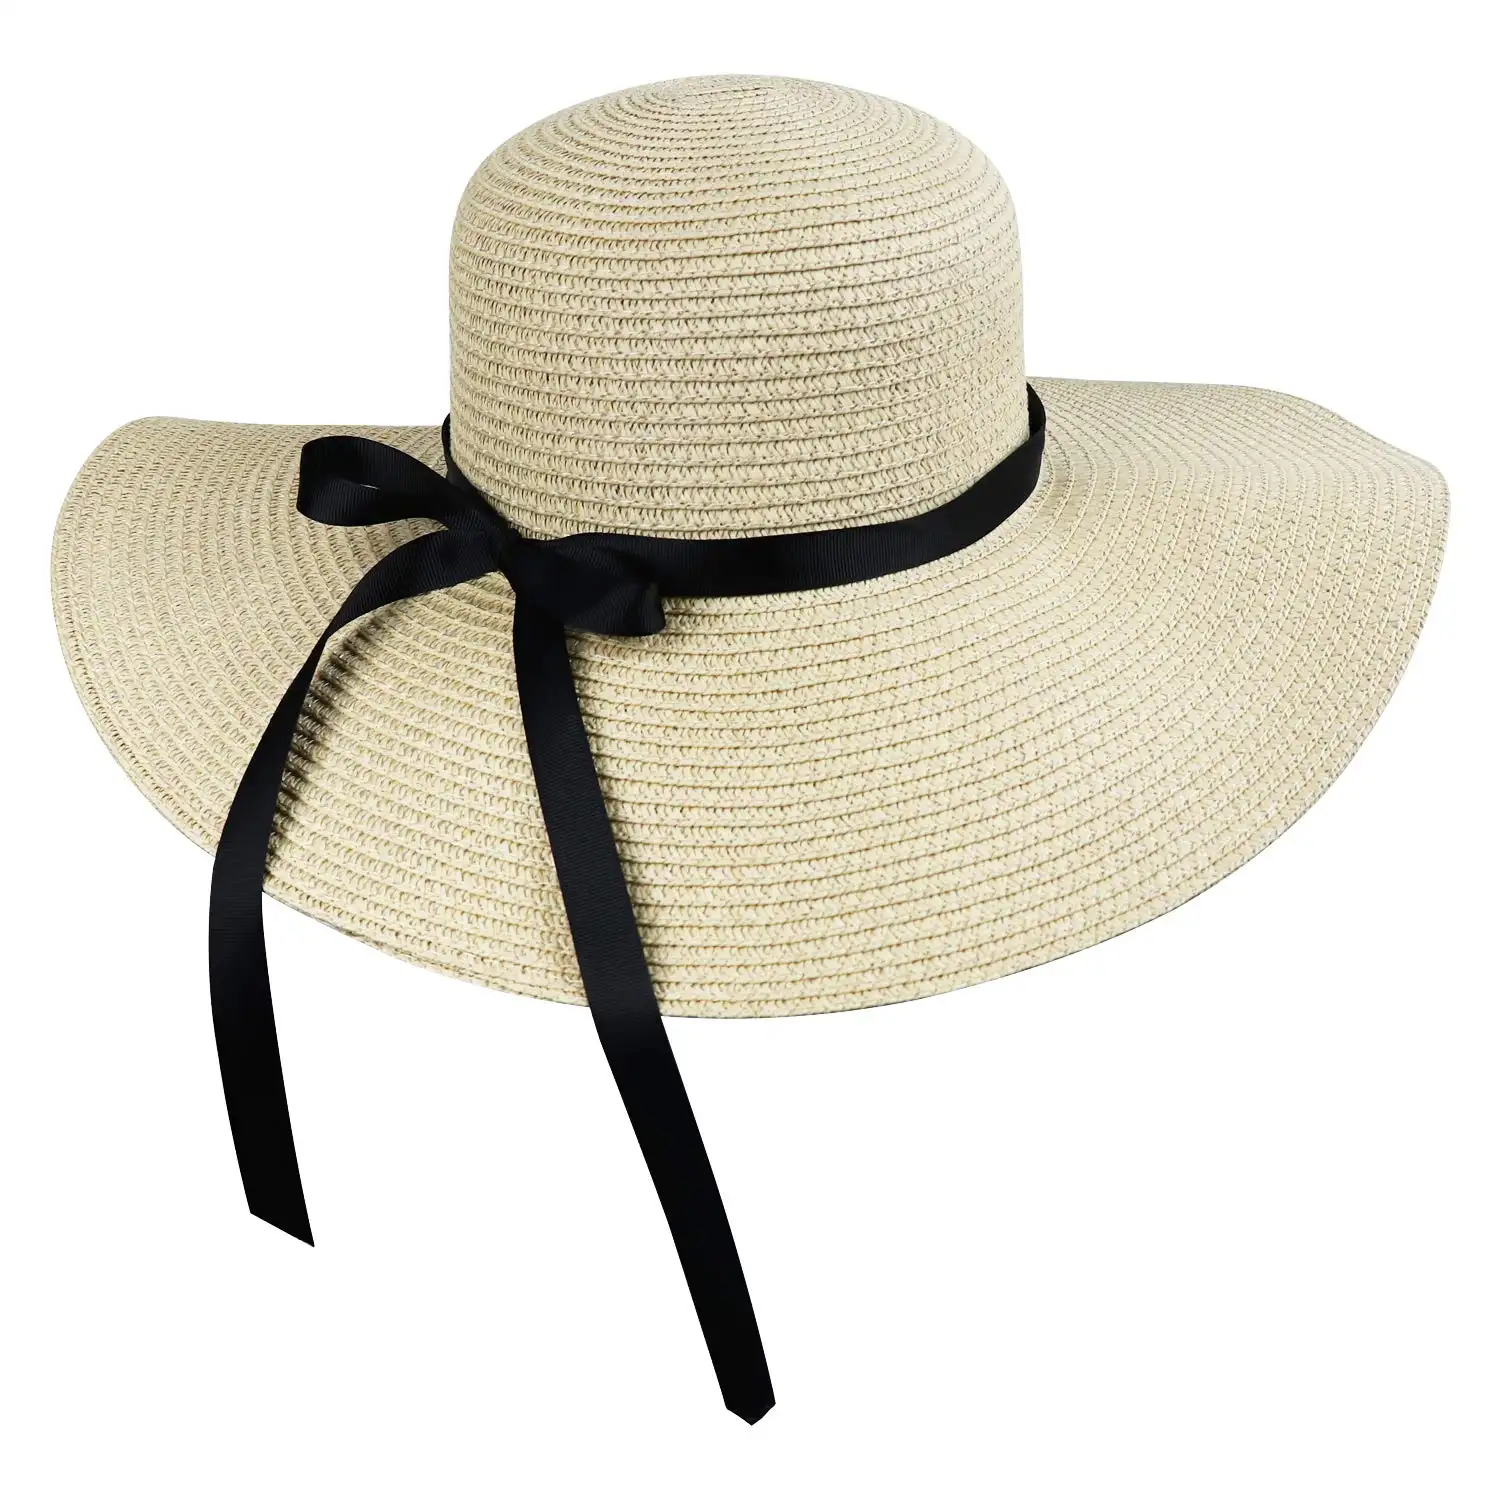 उच्च गुणवत्ता वाले महिलाओं लेडी की बेज कागज चोटी रिबन बैंड और समुद्र तट सूर्य भूसे फ्लैट शीर्ष मांझी टोपी